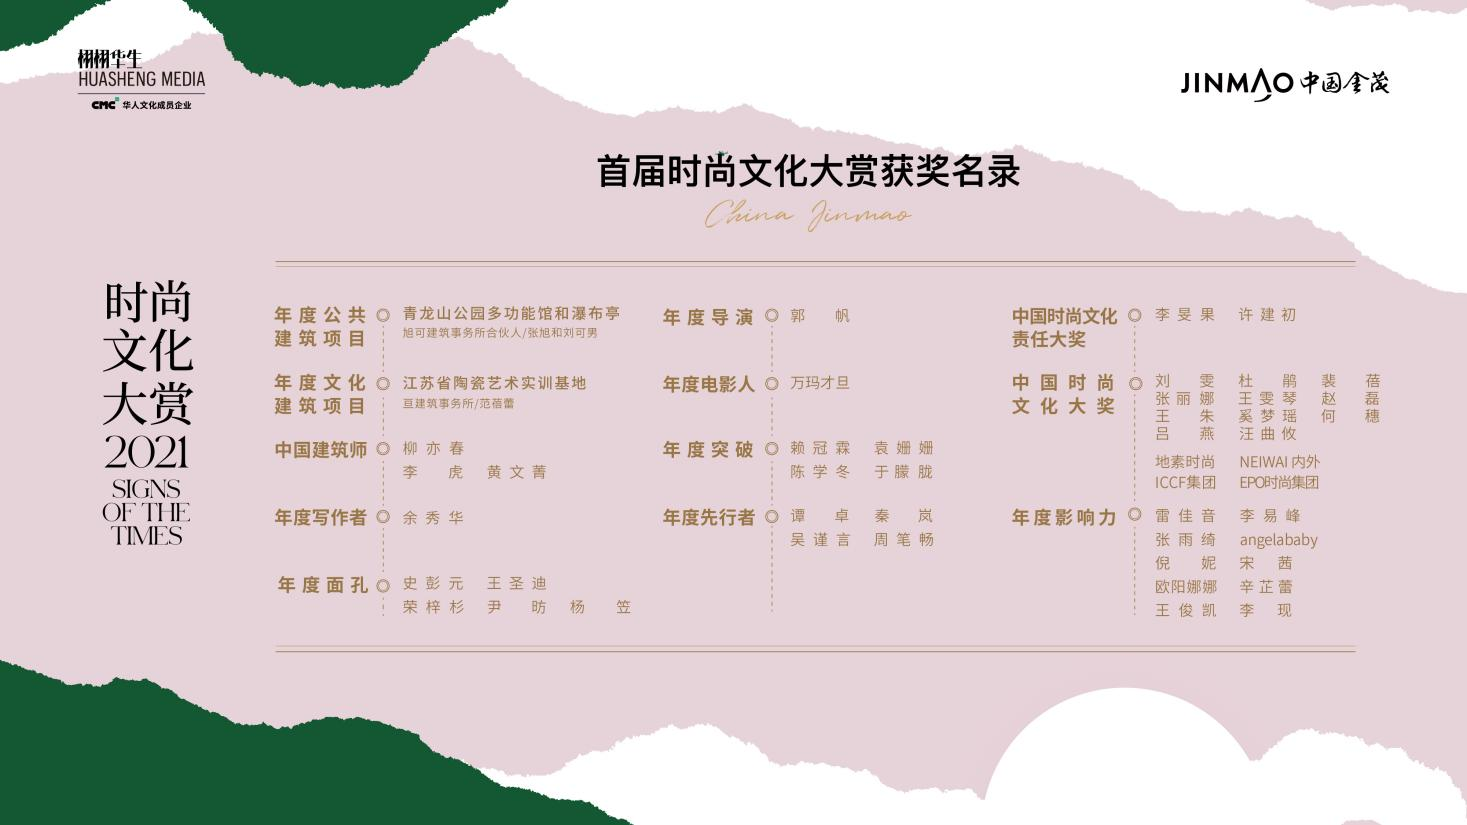 时尚文化大赏“见证时代印记” 金宴中国第五季上海精彩呈现-中国网地产